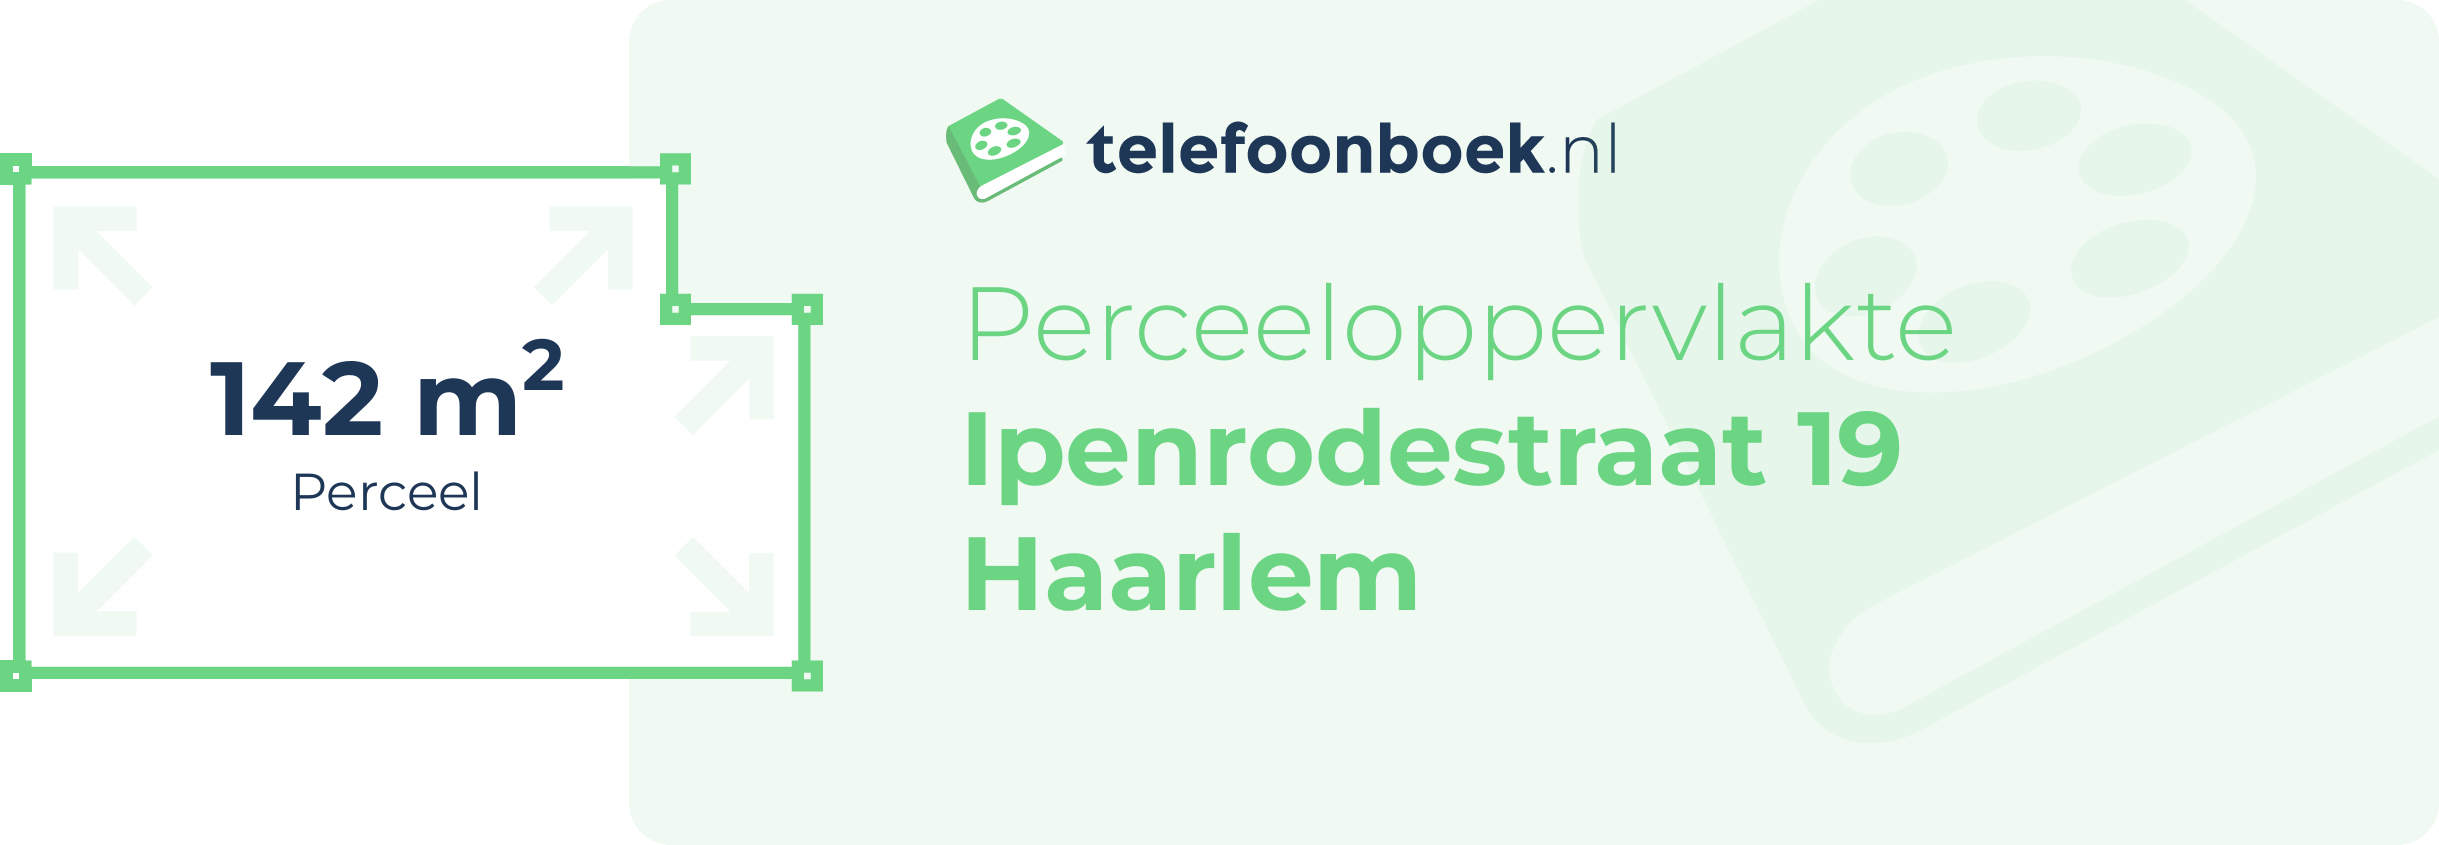 Perceeloppervlakte Ipenrodestraat 19 Haarlem